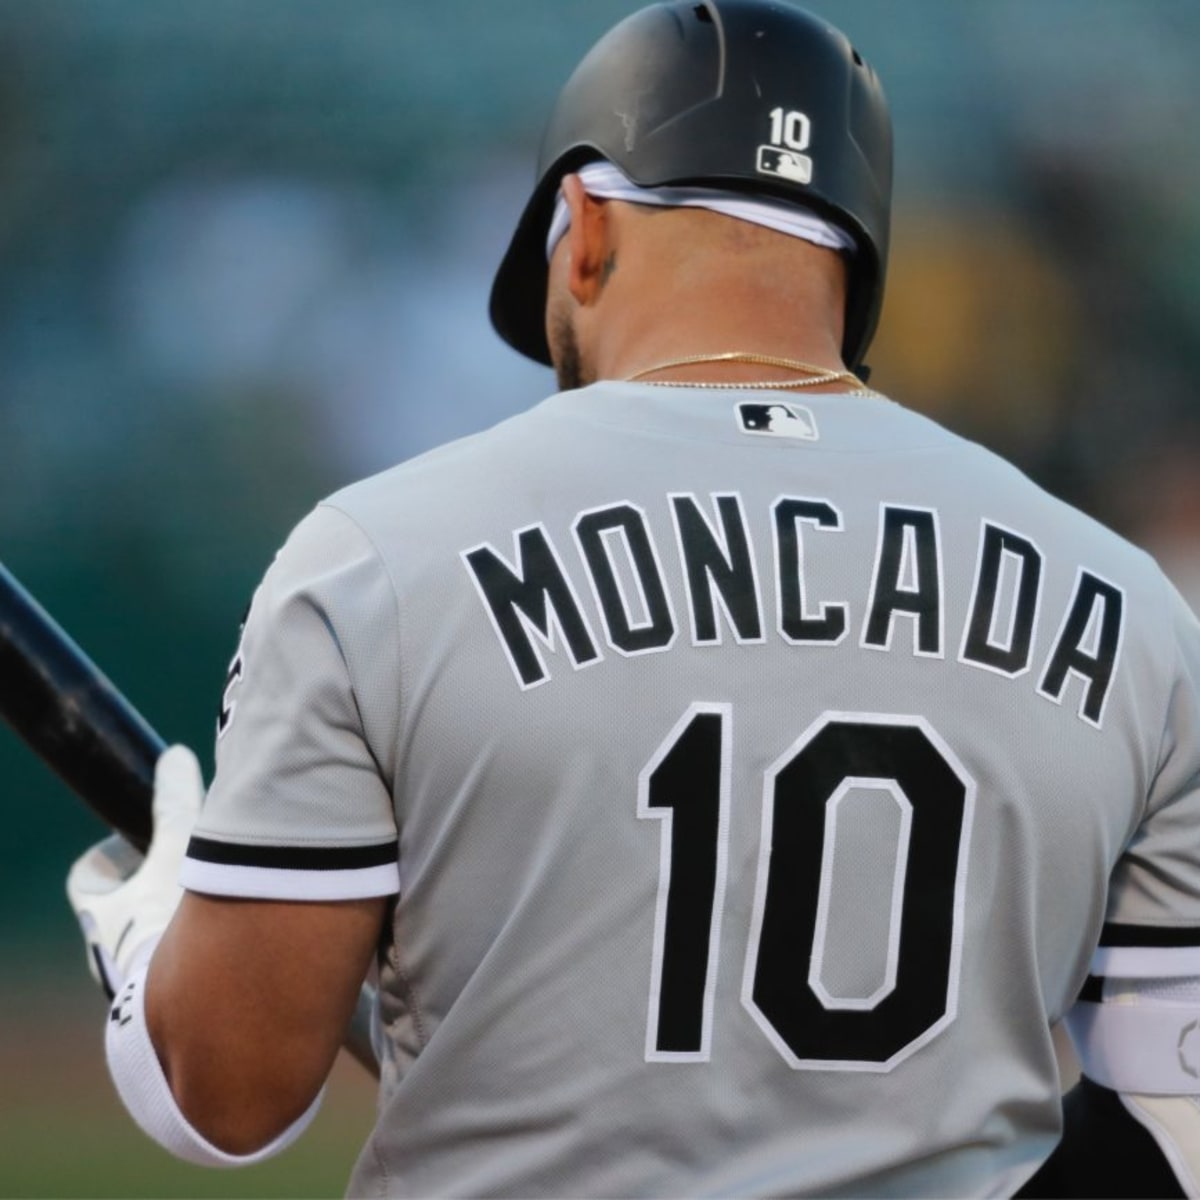 Yoan Moncada's 2-year-old son is already bat-flipping like a pro